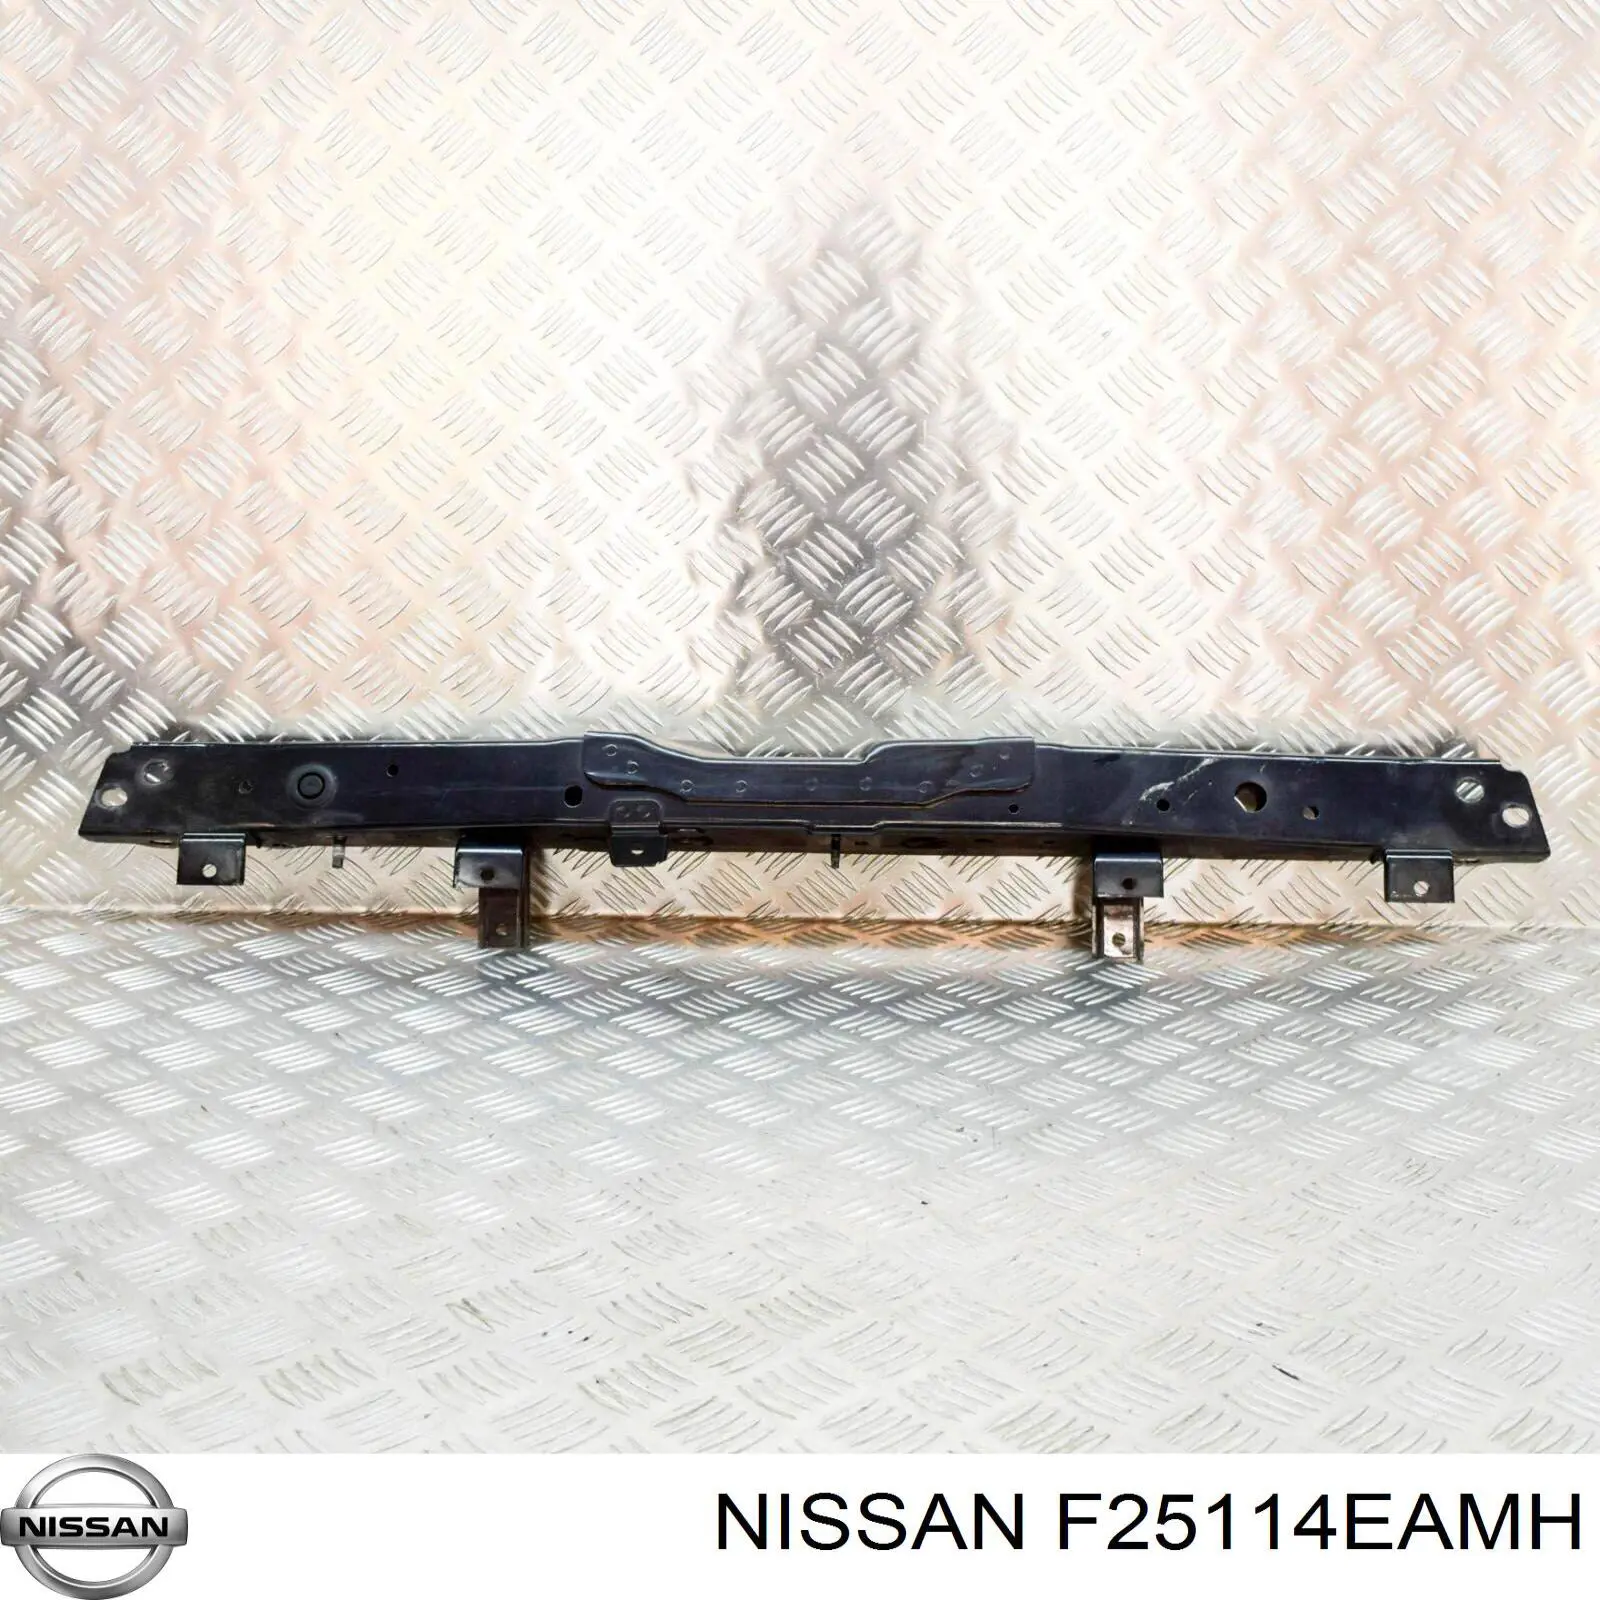 F25114EAMH Nissan placa sobreposta superior do painel dianteiro (de suporte do radiador)